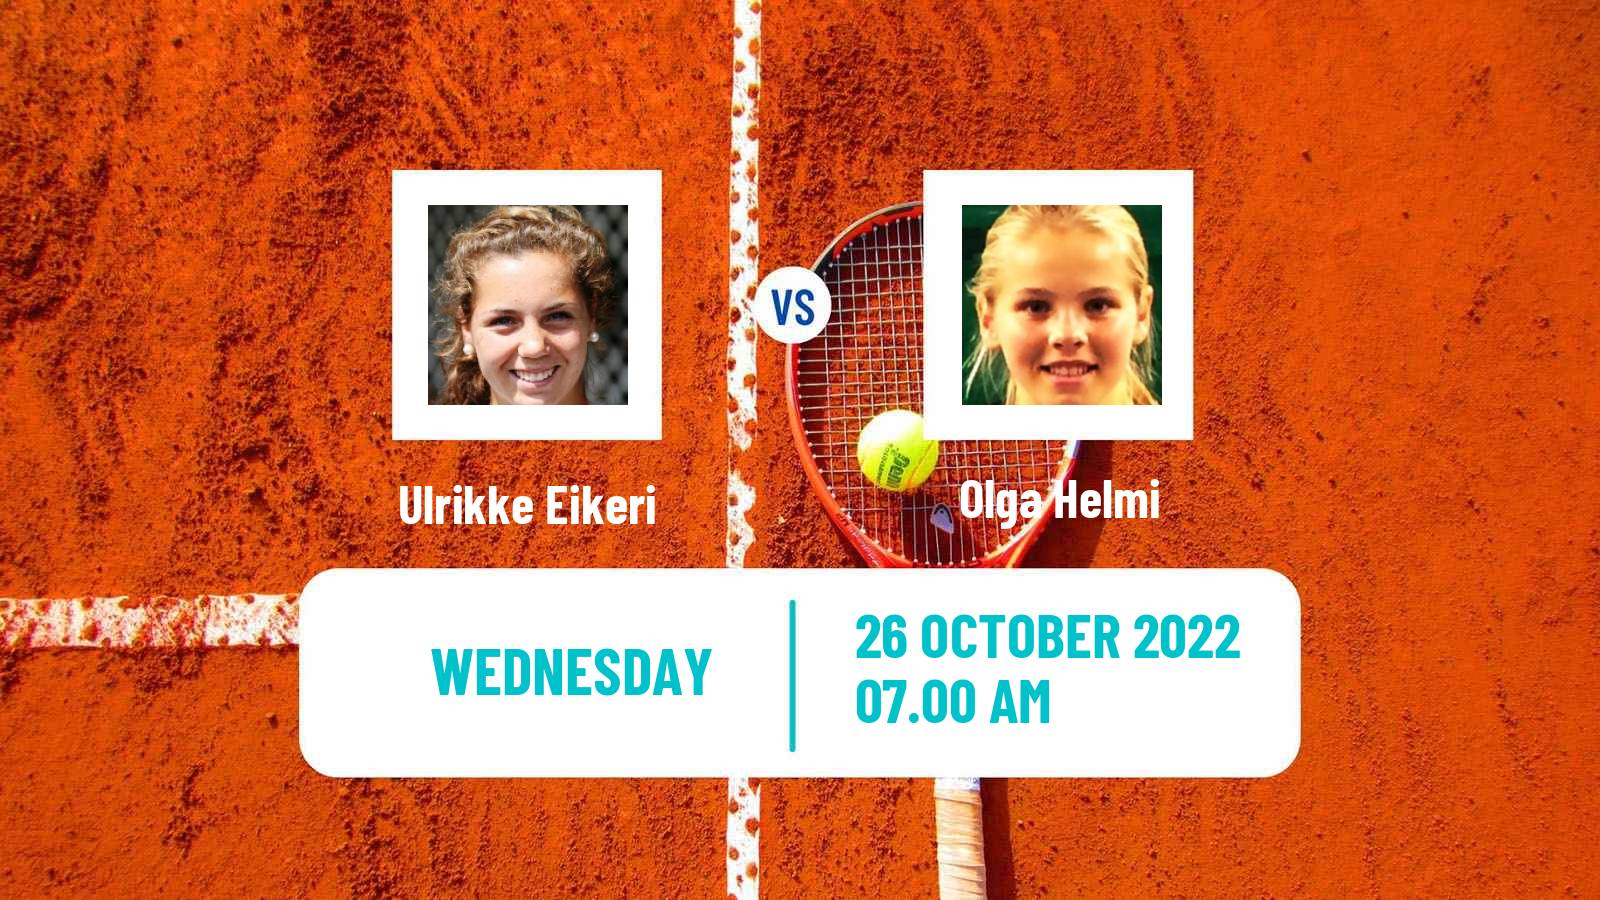 Tennis ITF Tournaments Ulrikke Eikeri - Olga Helmi